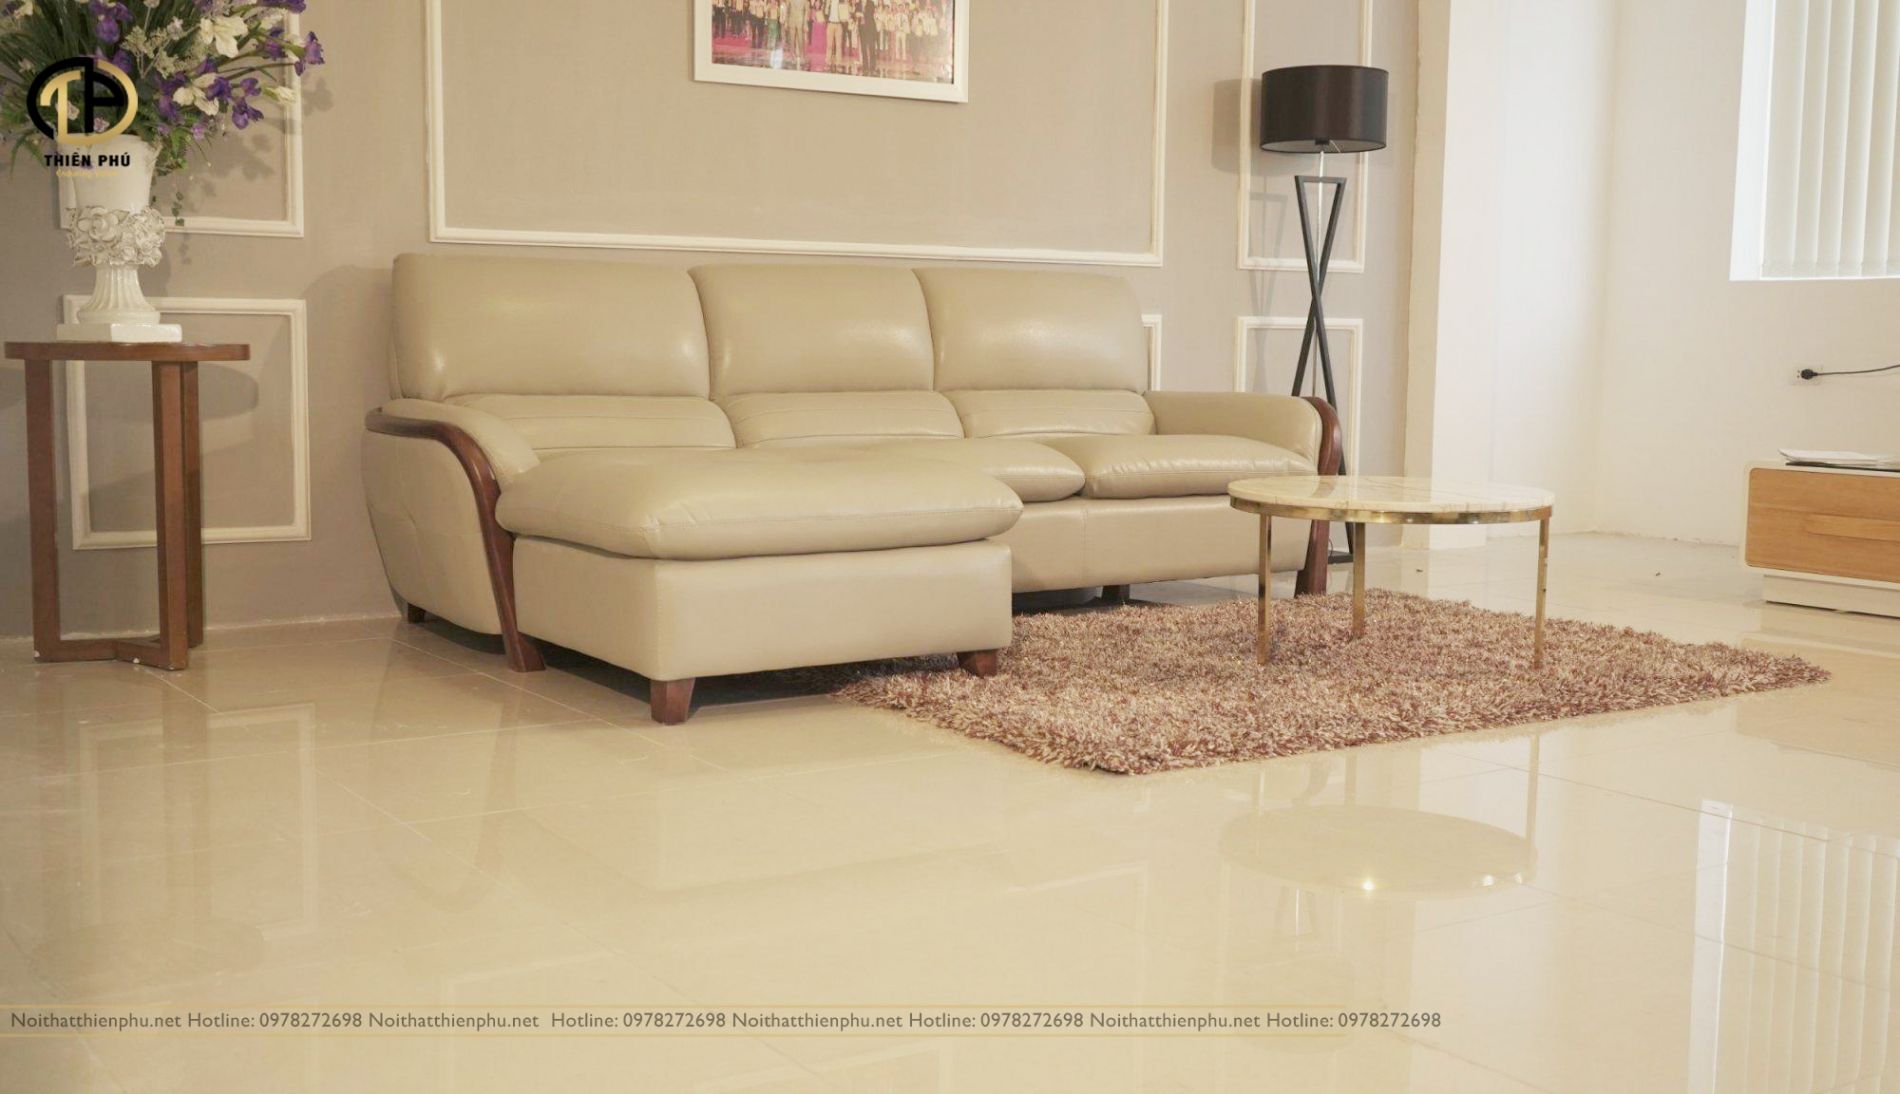 Sofa chung cư chất liệu bọc da công nghiệp giá rẻ đẹp